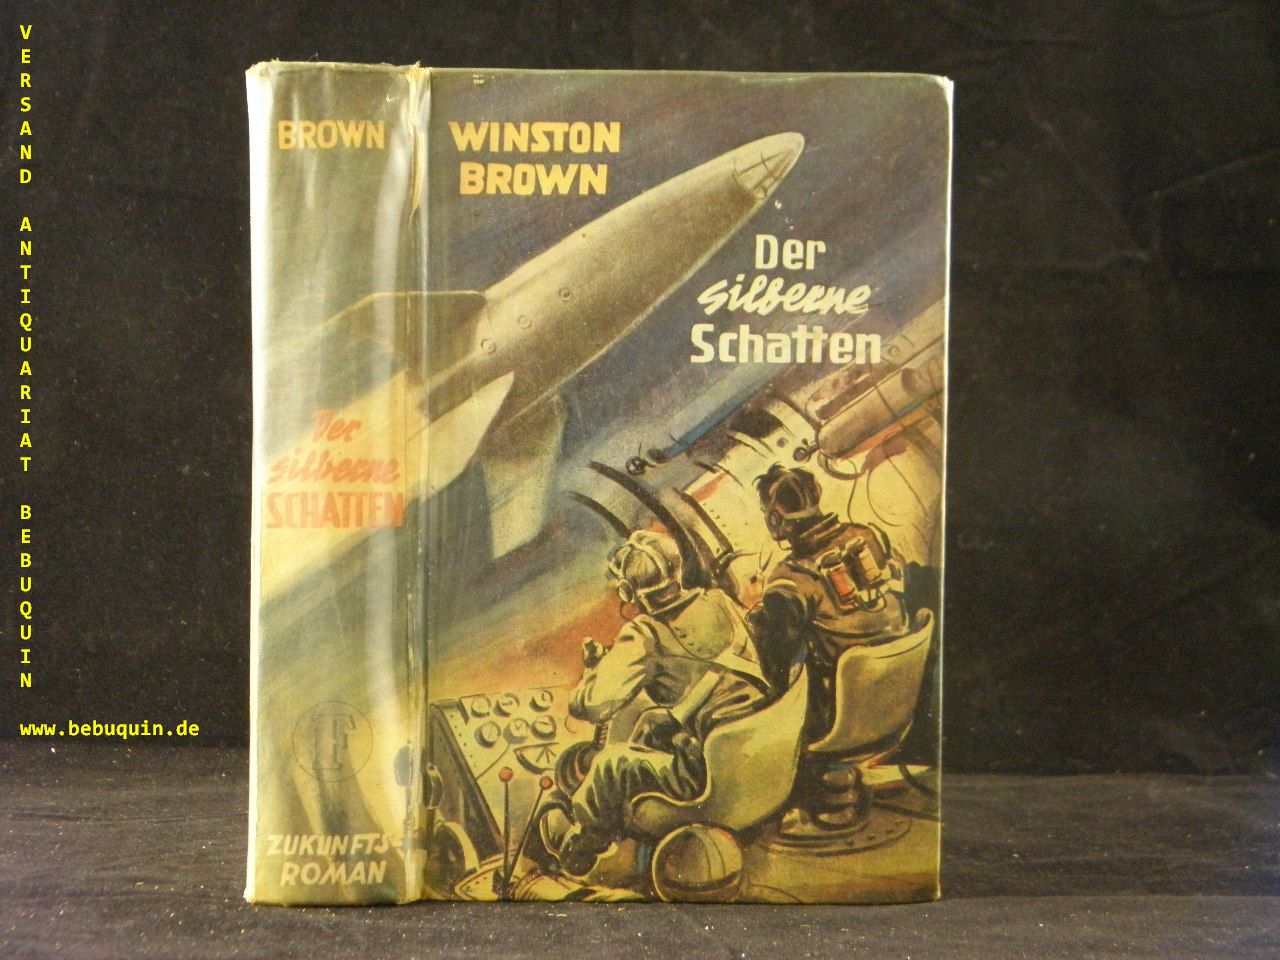 BROWN, Winston: - Der silberne Schatten. Zukunfzs-Roman.